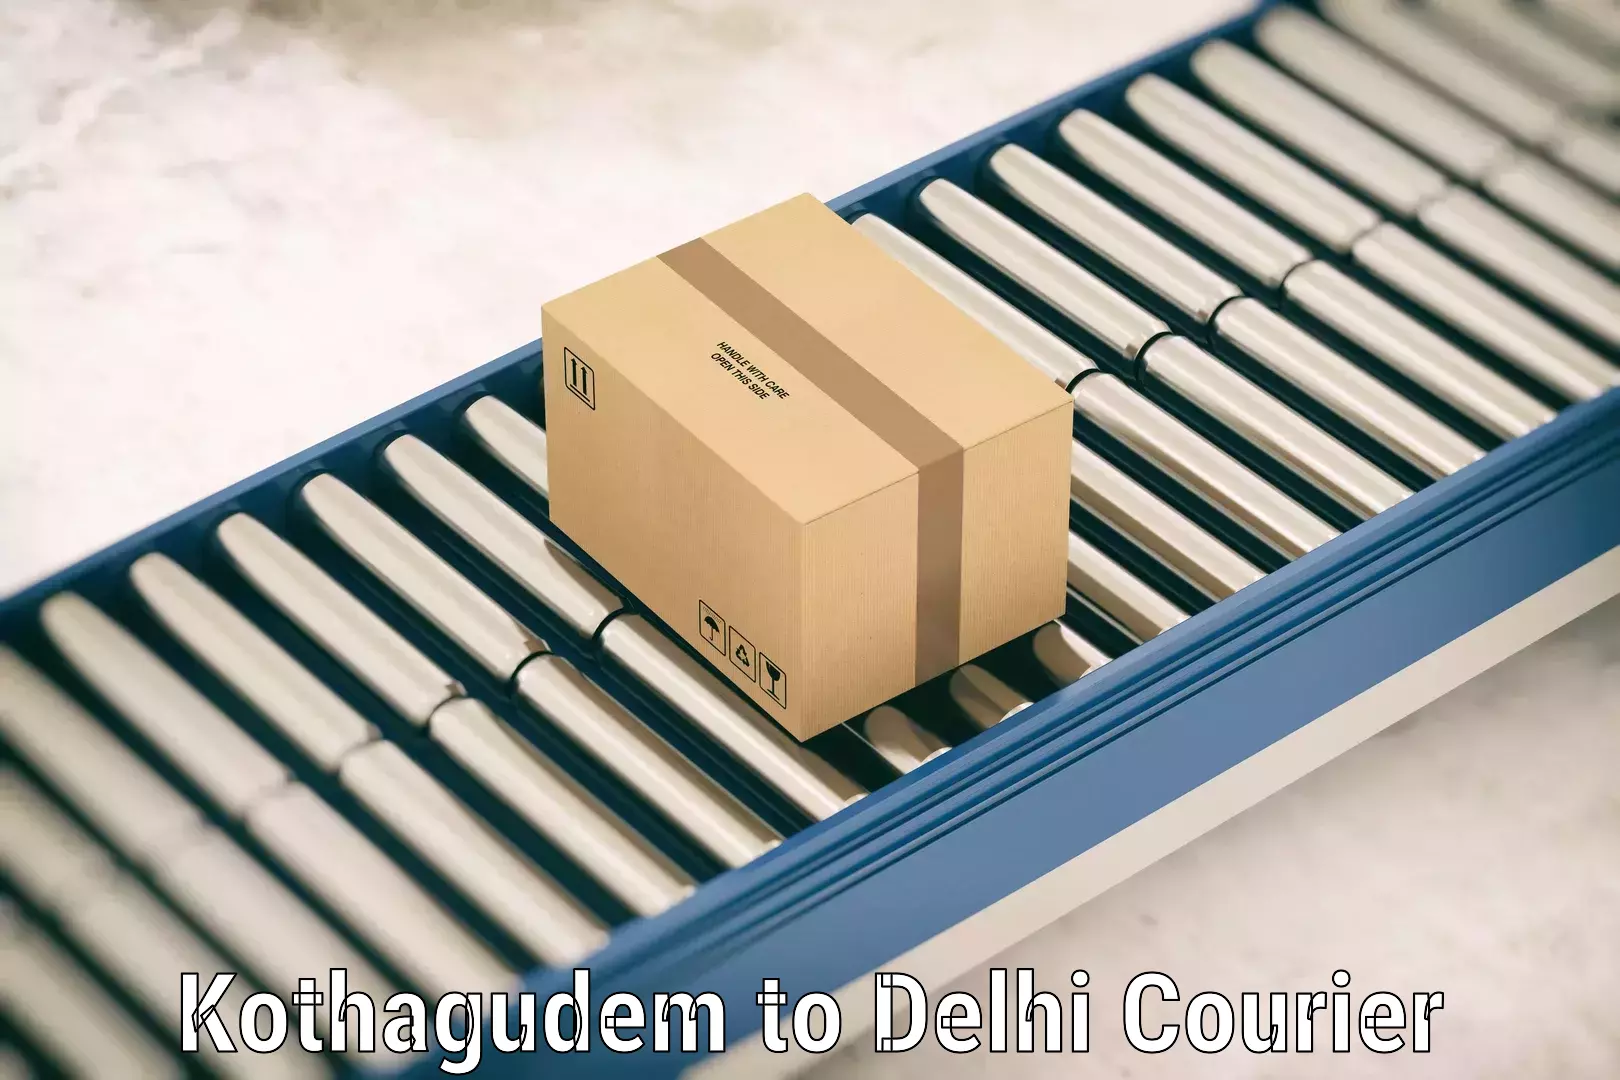 Luggage delivery network Kothagudem to Krishna Nagar